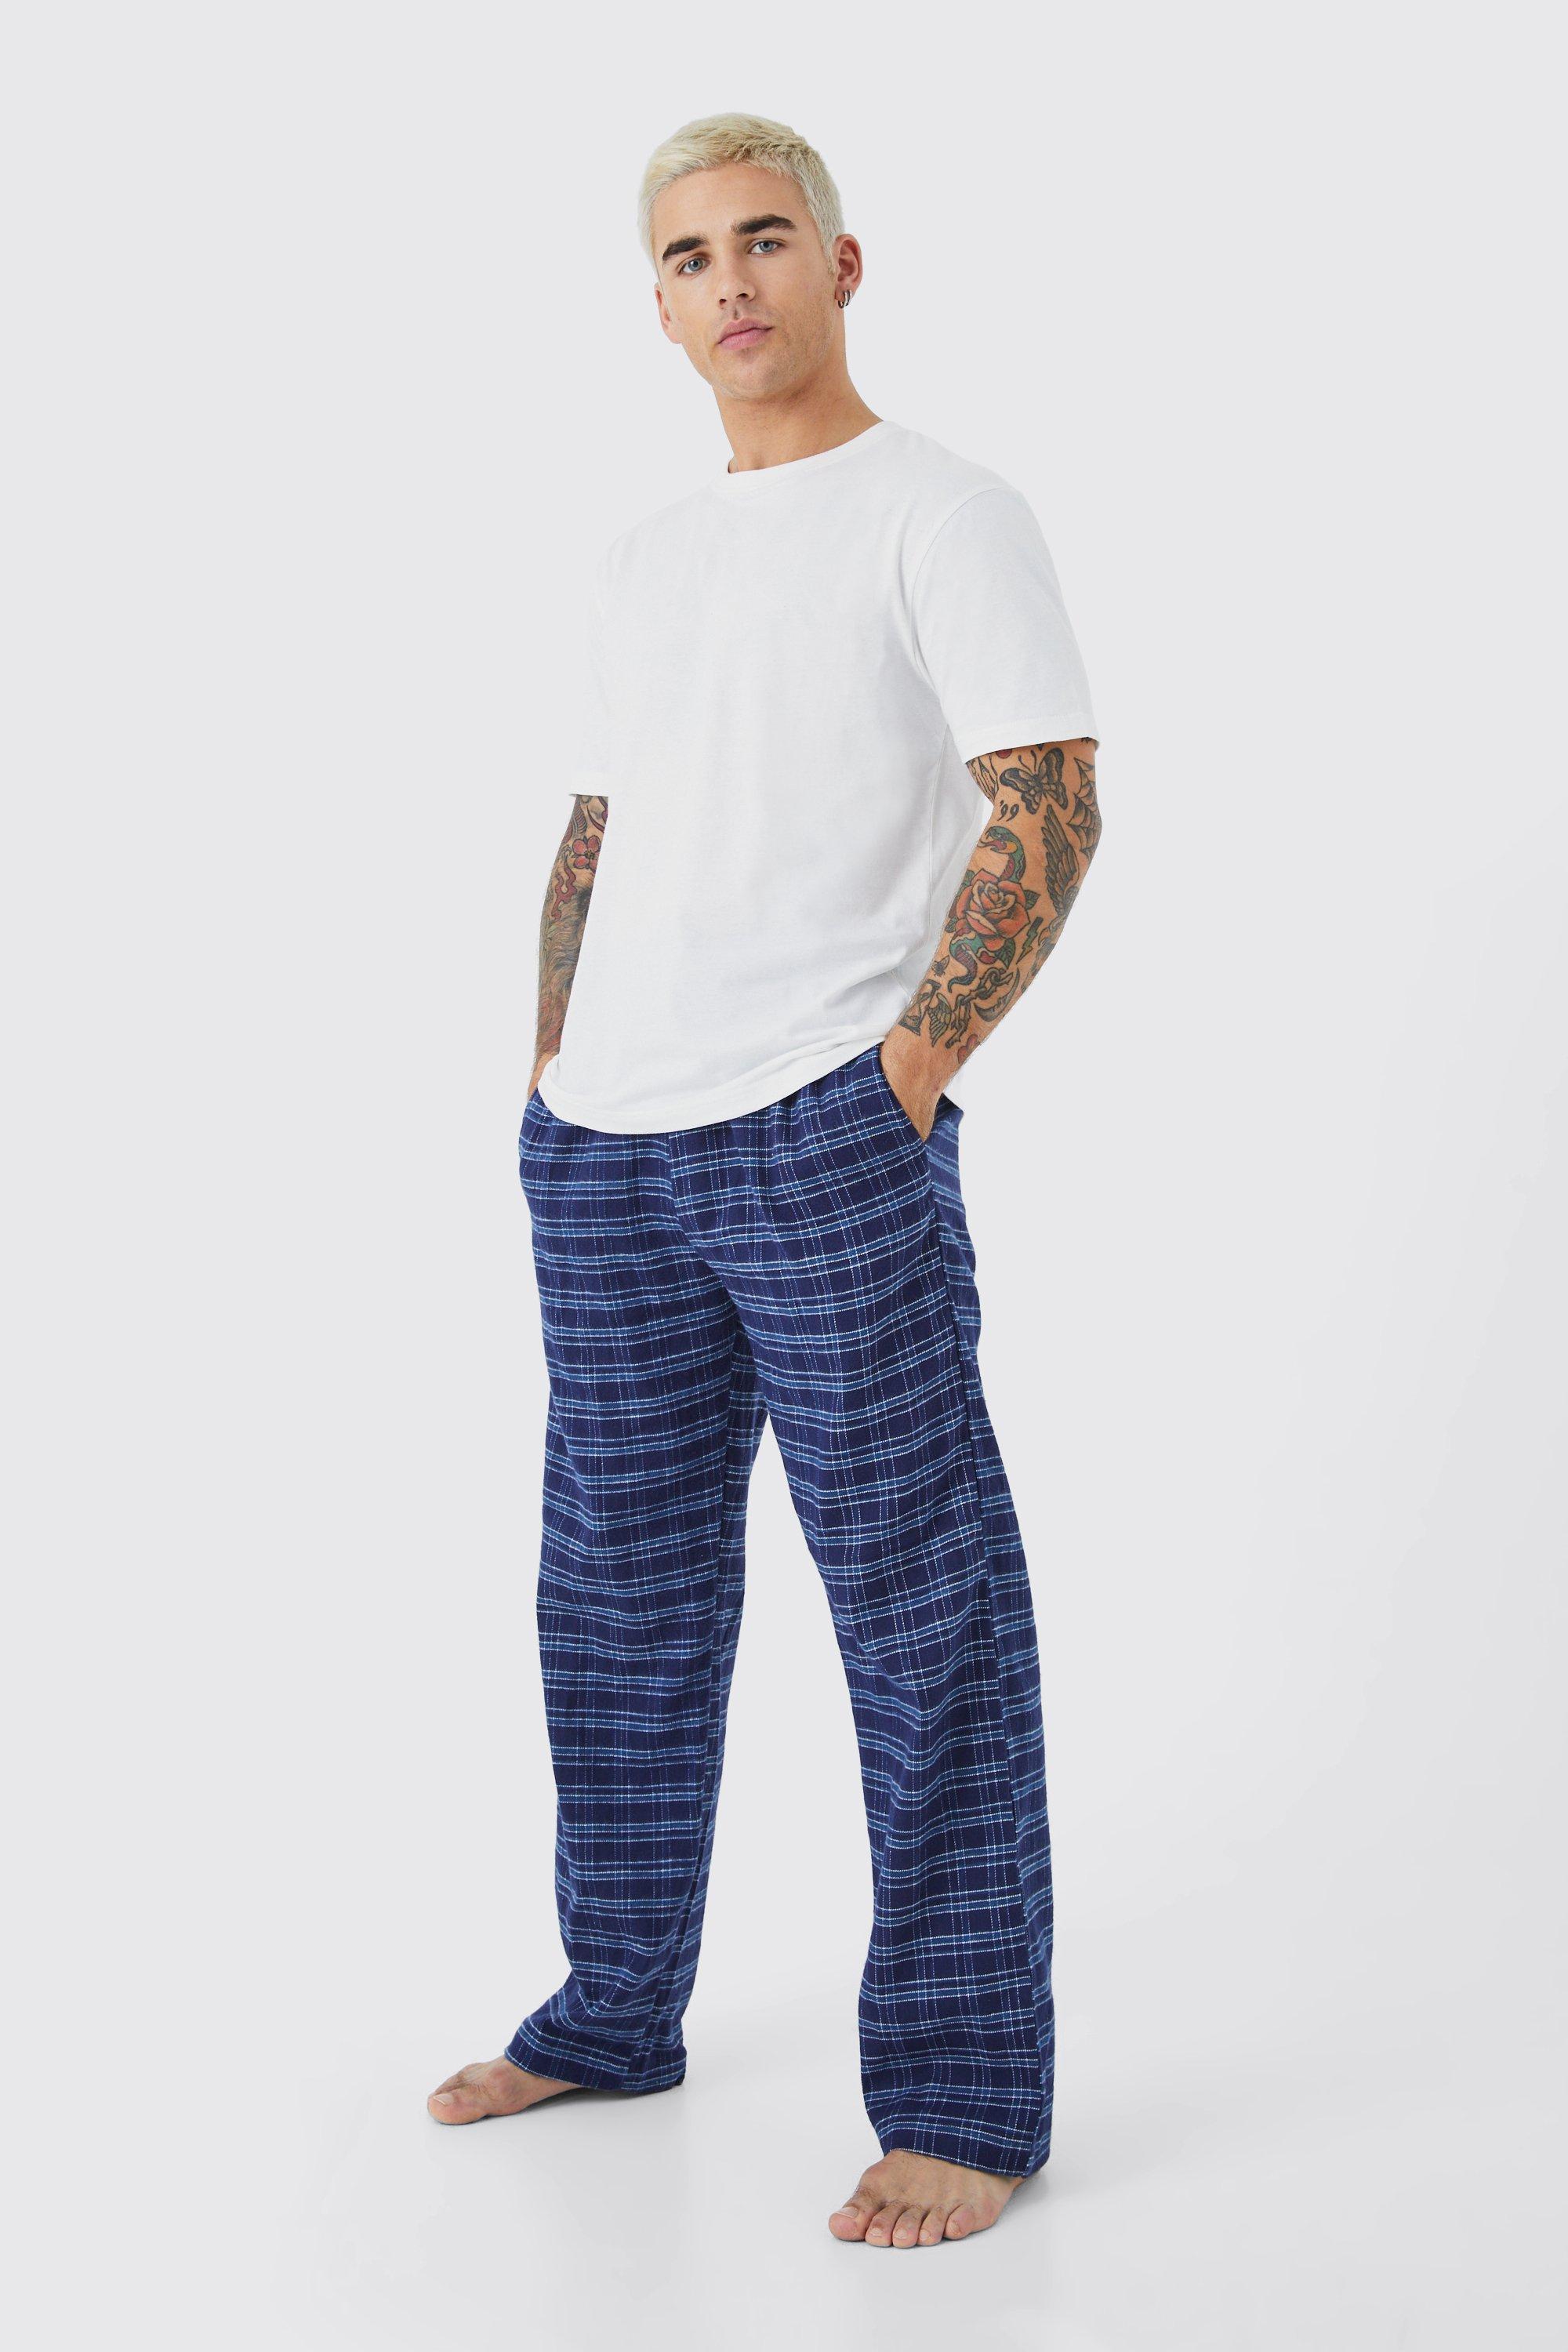 pyjama à carreaux avec t-shirt et pantalon homme - bleu - m, bleu